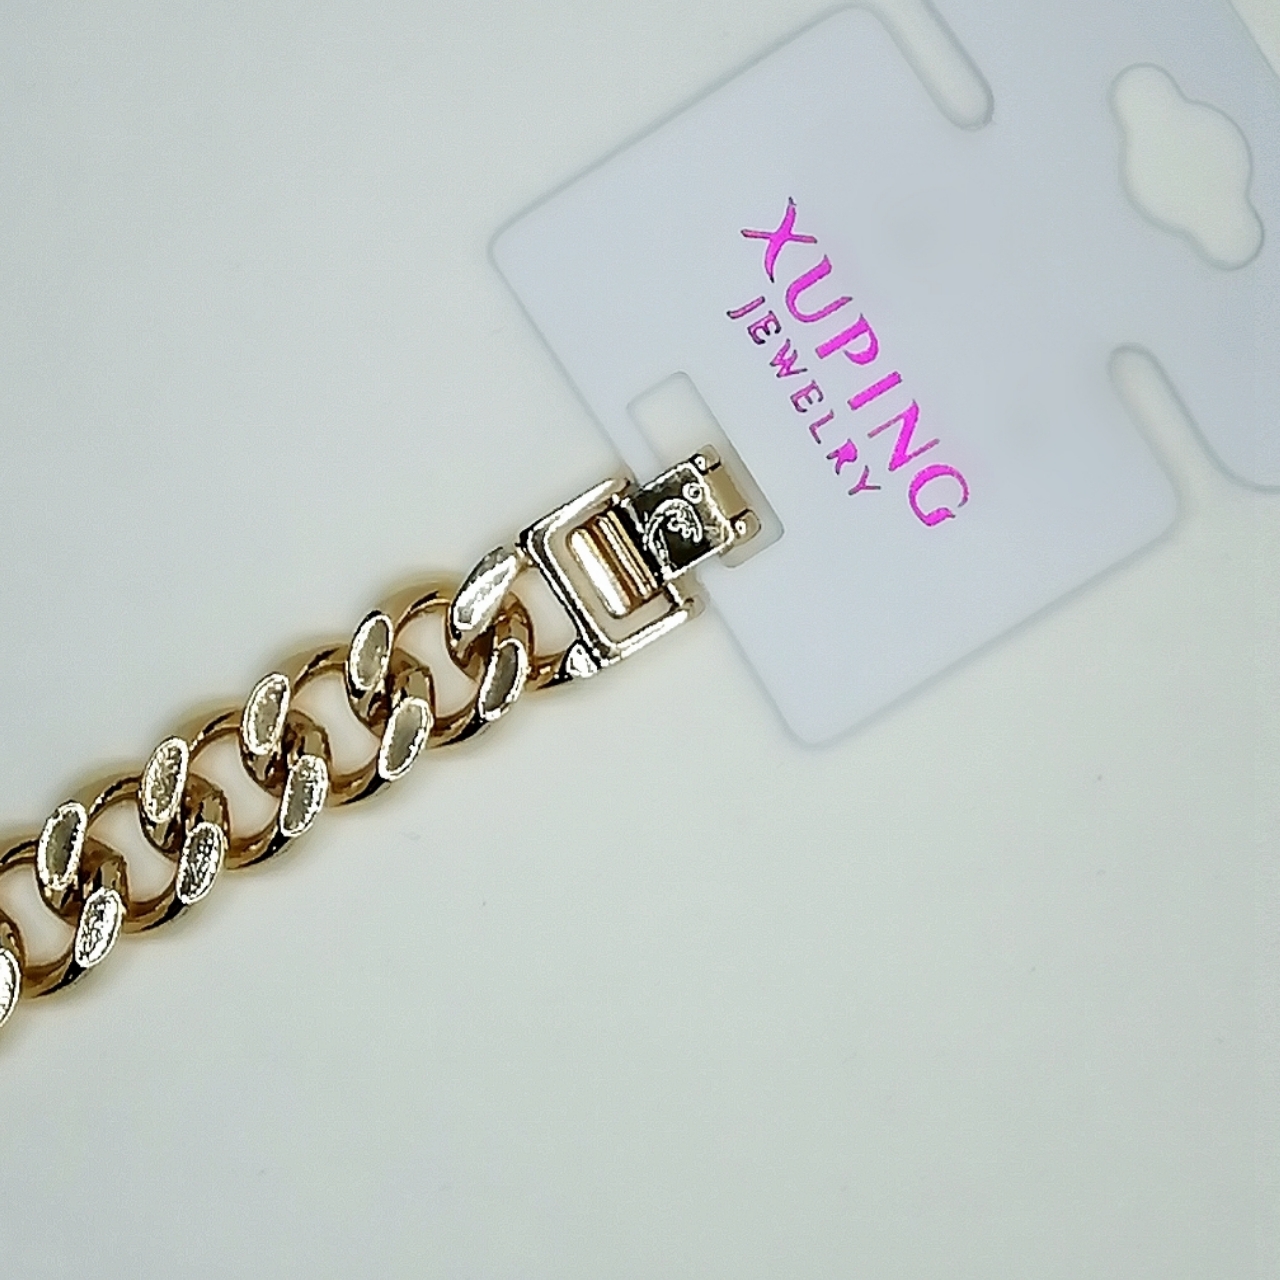 دستبند زنانه ژوپینگ مدل xu01 -  - 4